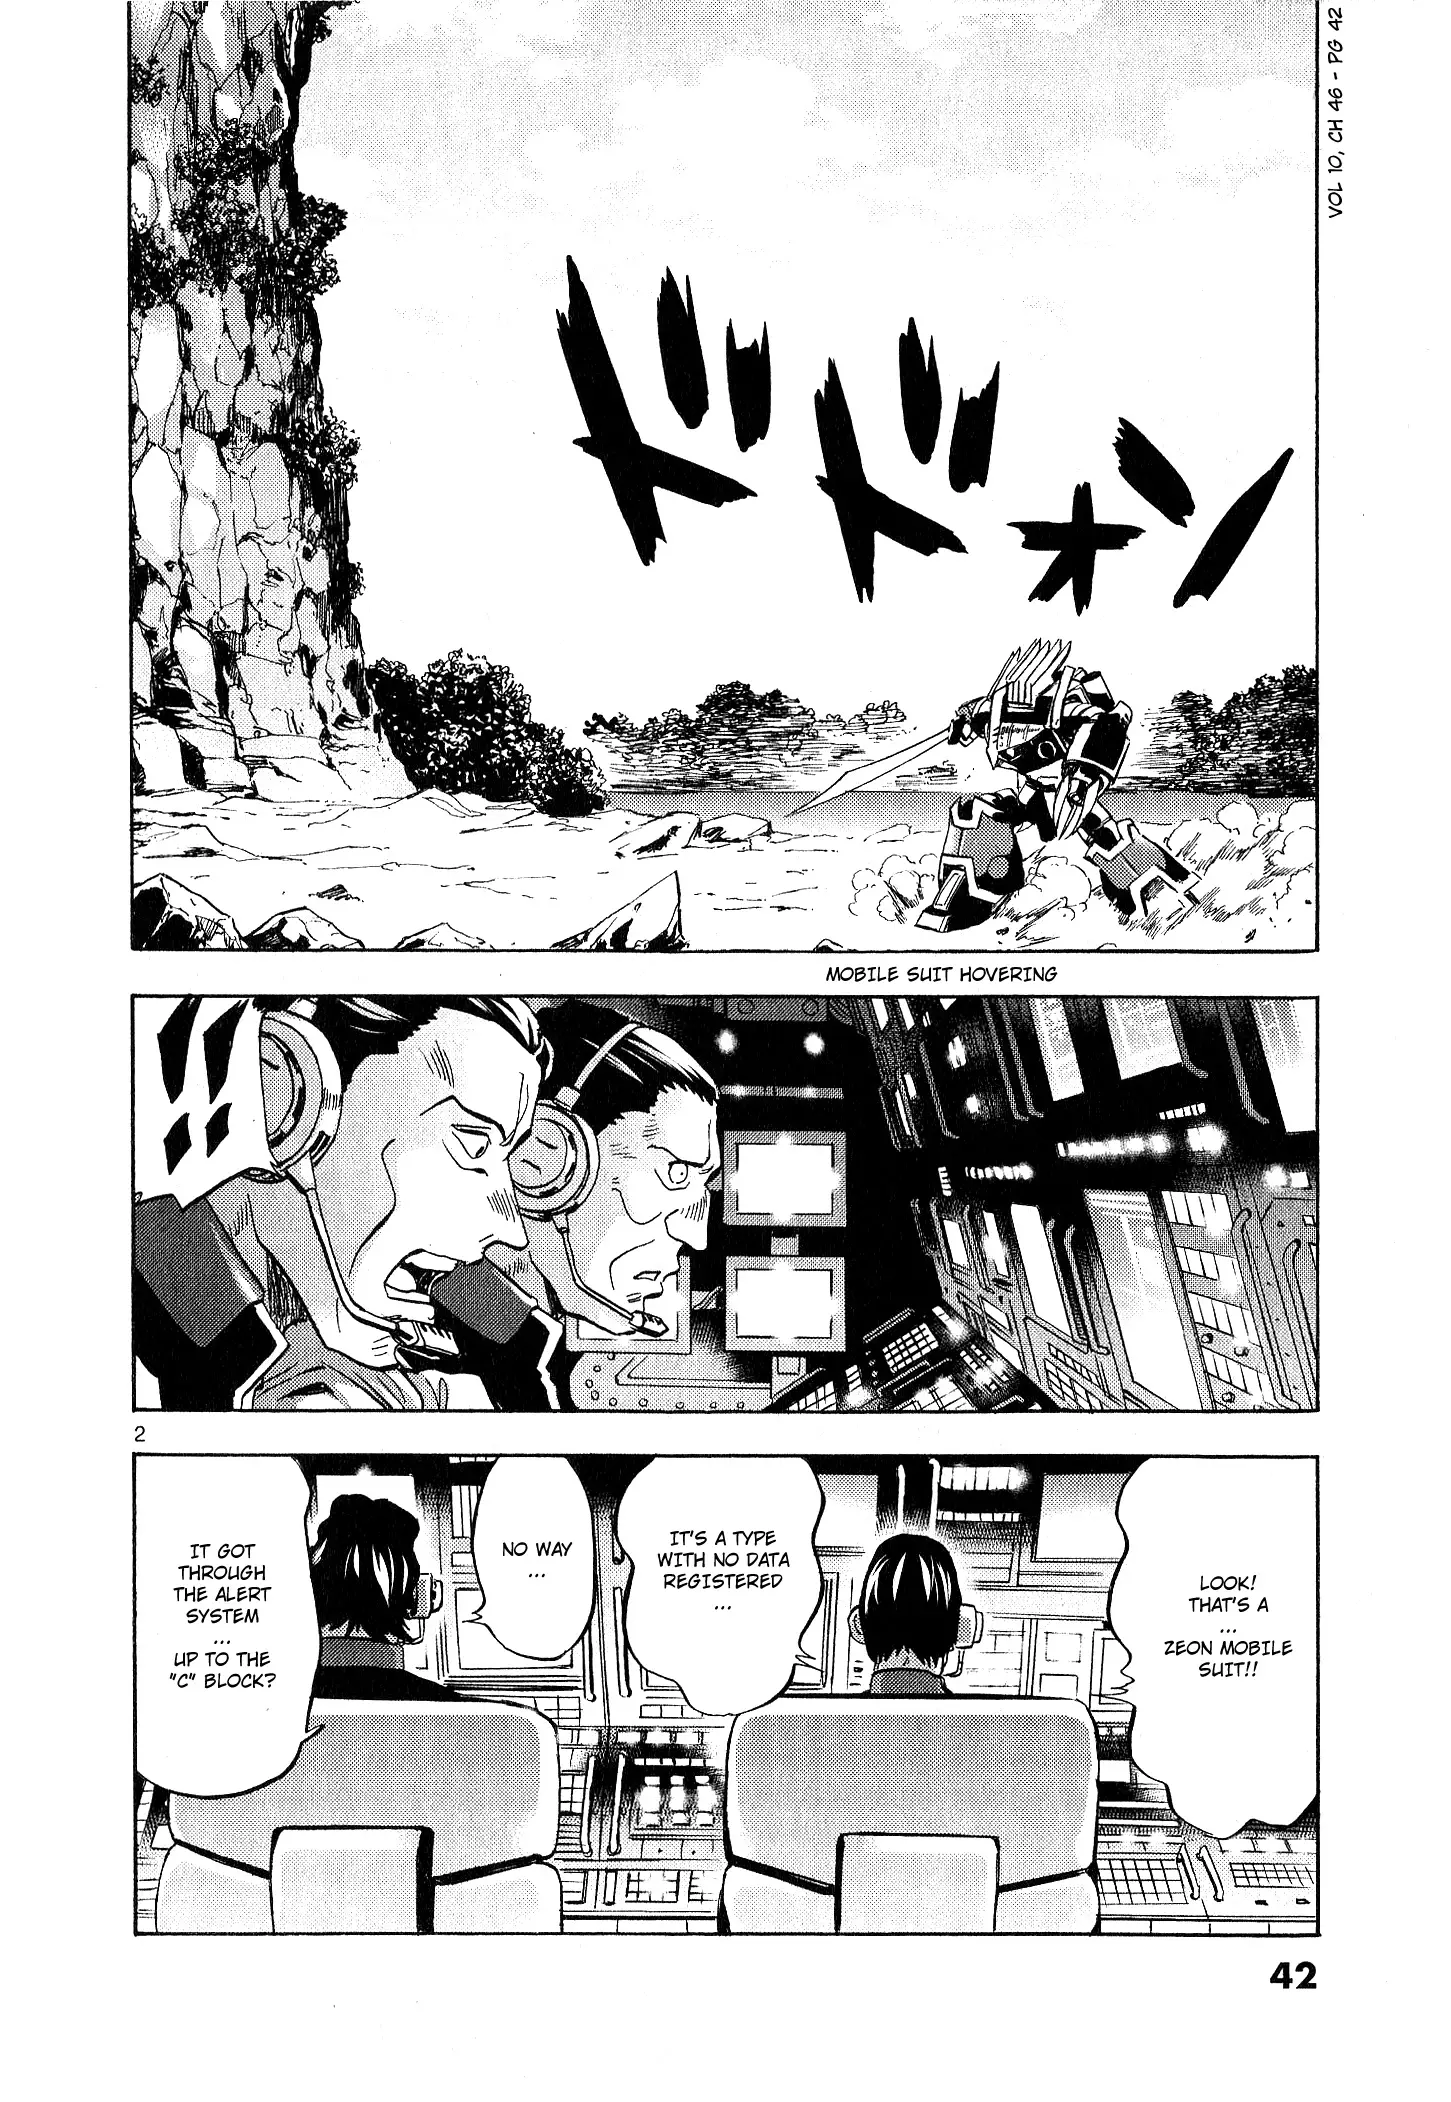 Mobile Suit Gundam Aggressor - 46 page 2-2427f3e4